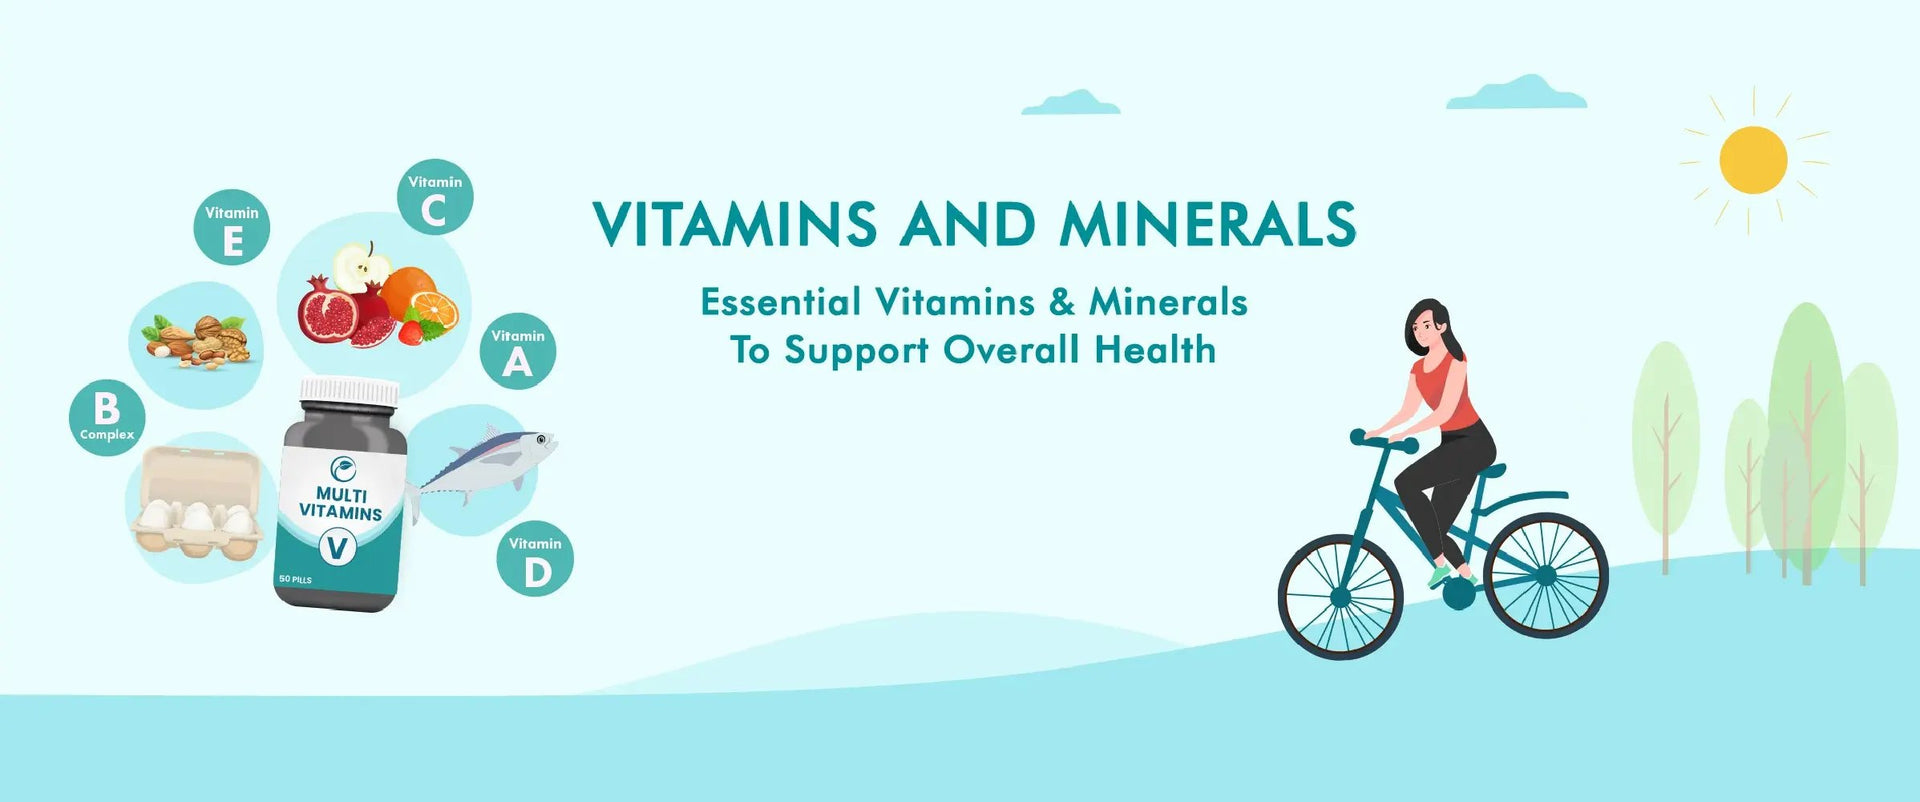 Vitamins & Minerals Supplements